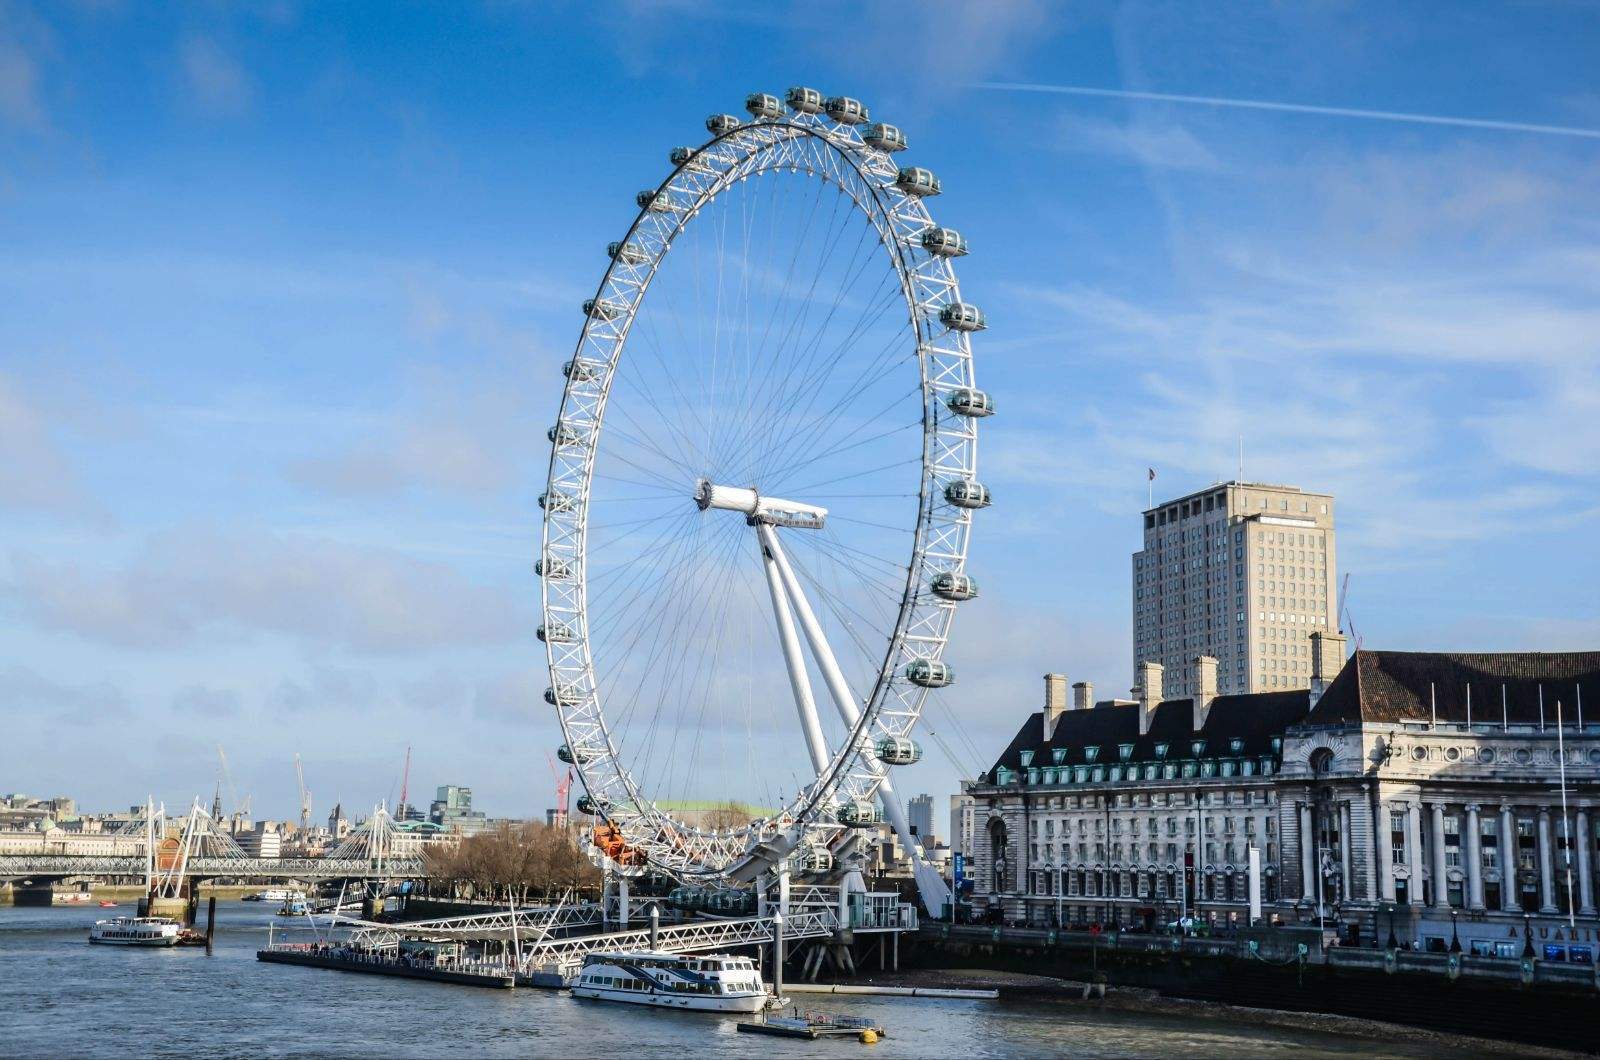 伦敦眼,又称千禧之轮，坐落在伦敦泰晤士河畔，是世界第四大摩天轮|伦敦眼|伦敦|泰晤士_新浪新闻